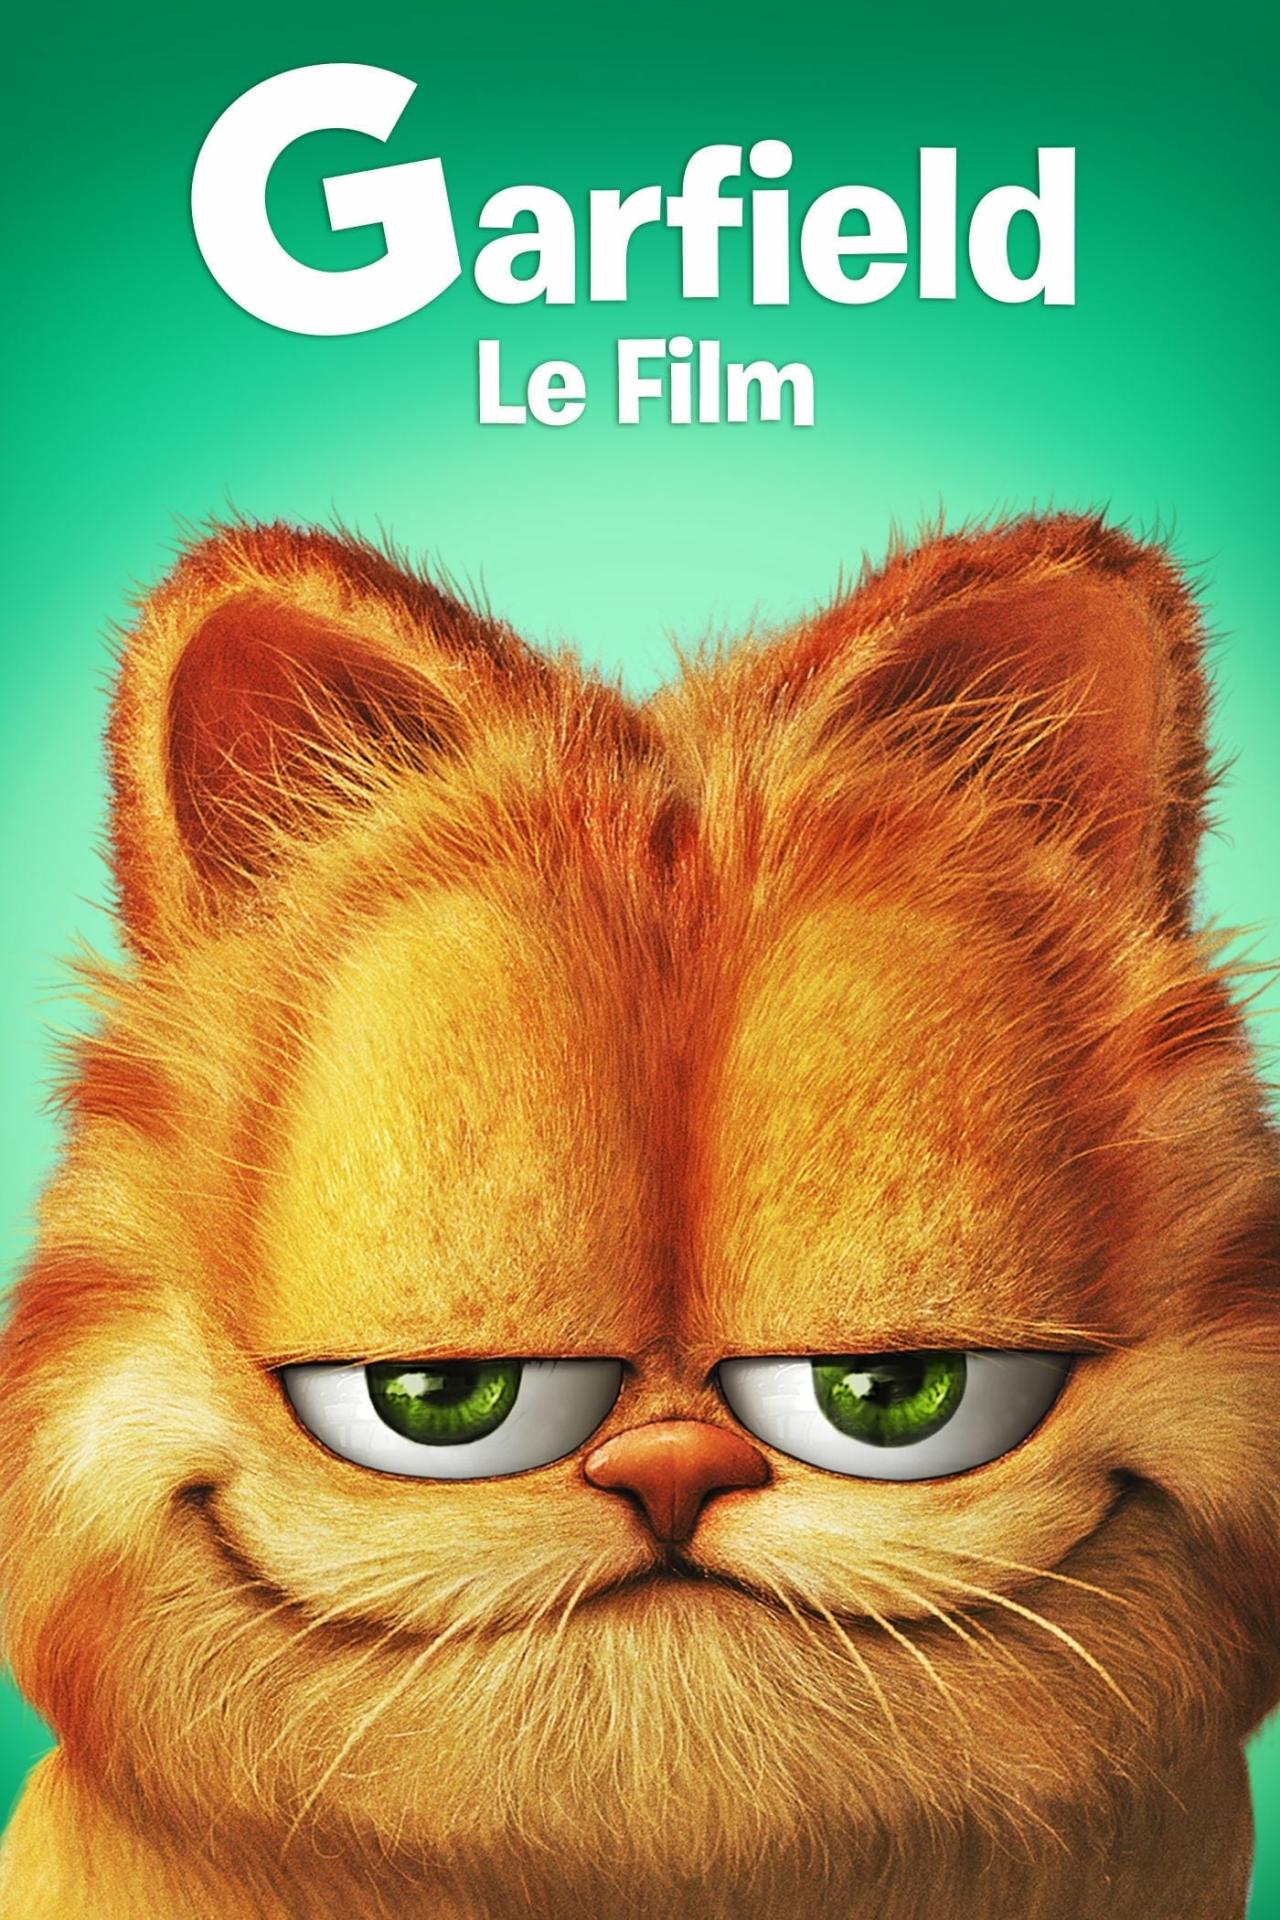 Garfield, le film est-il disponible sur Netflix ou autre ?